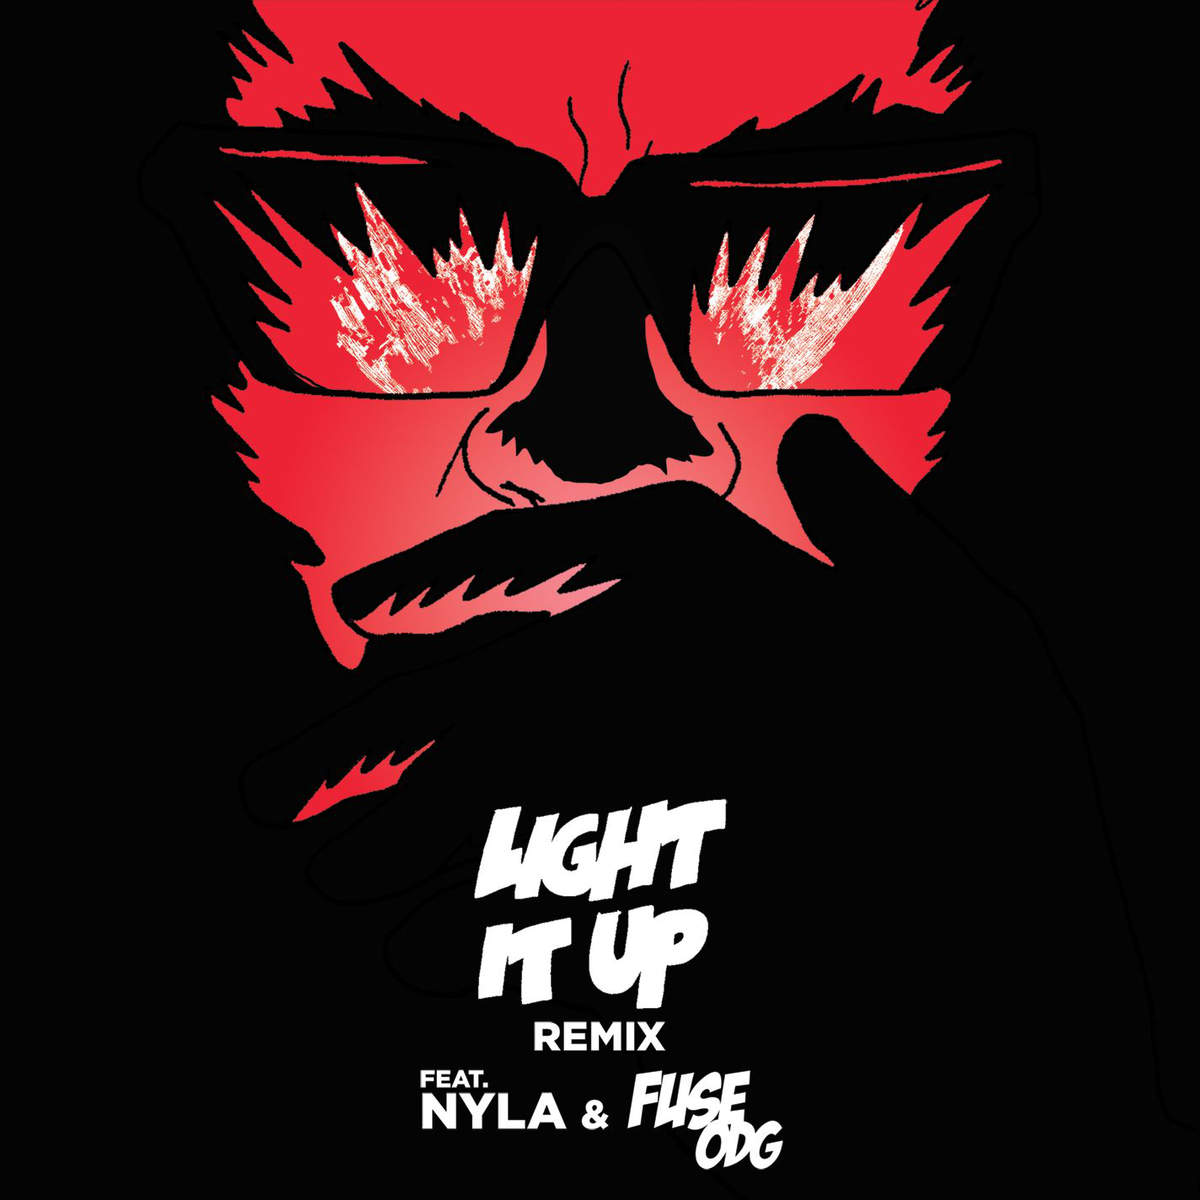 Todos los detalles sobre “Light It Up”, el nuevo video de Major Lazer